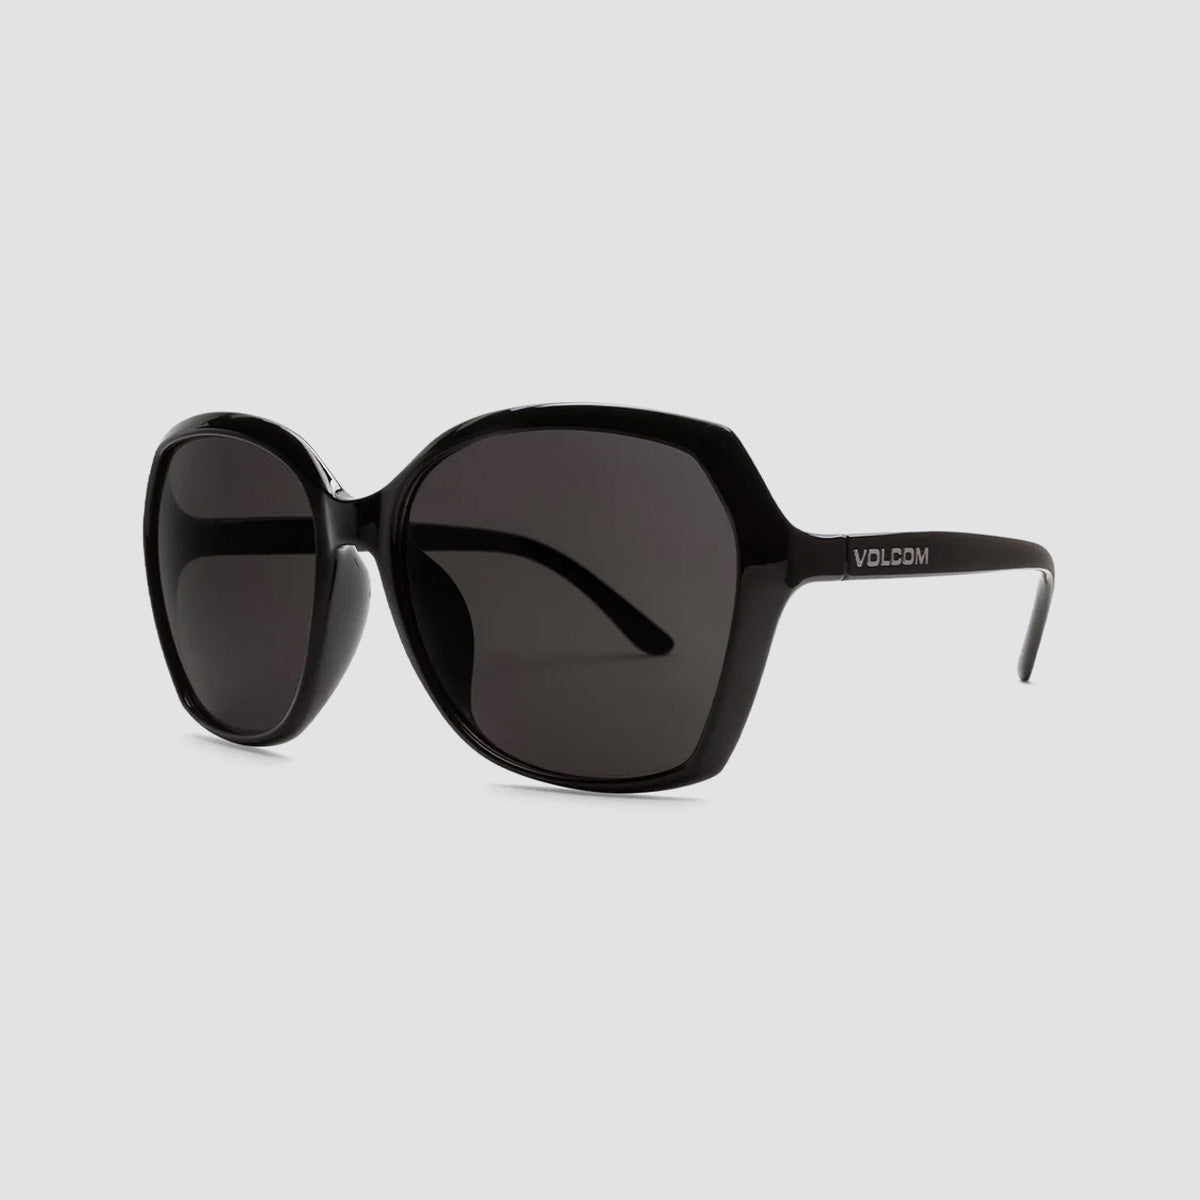 Volcom Psychic Sunglasses Gloss Black/Grey - Womens